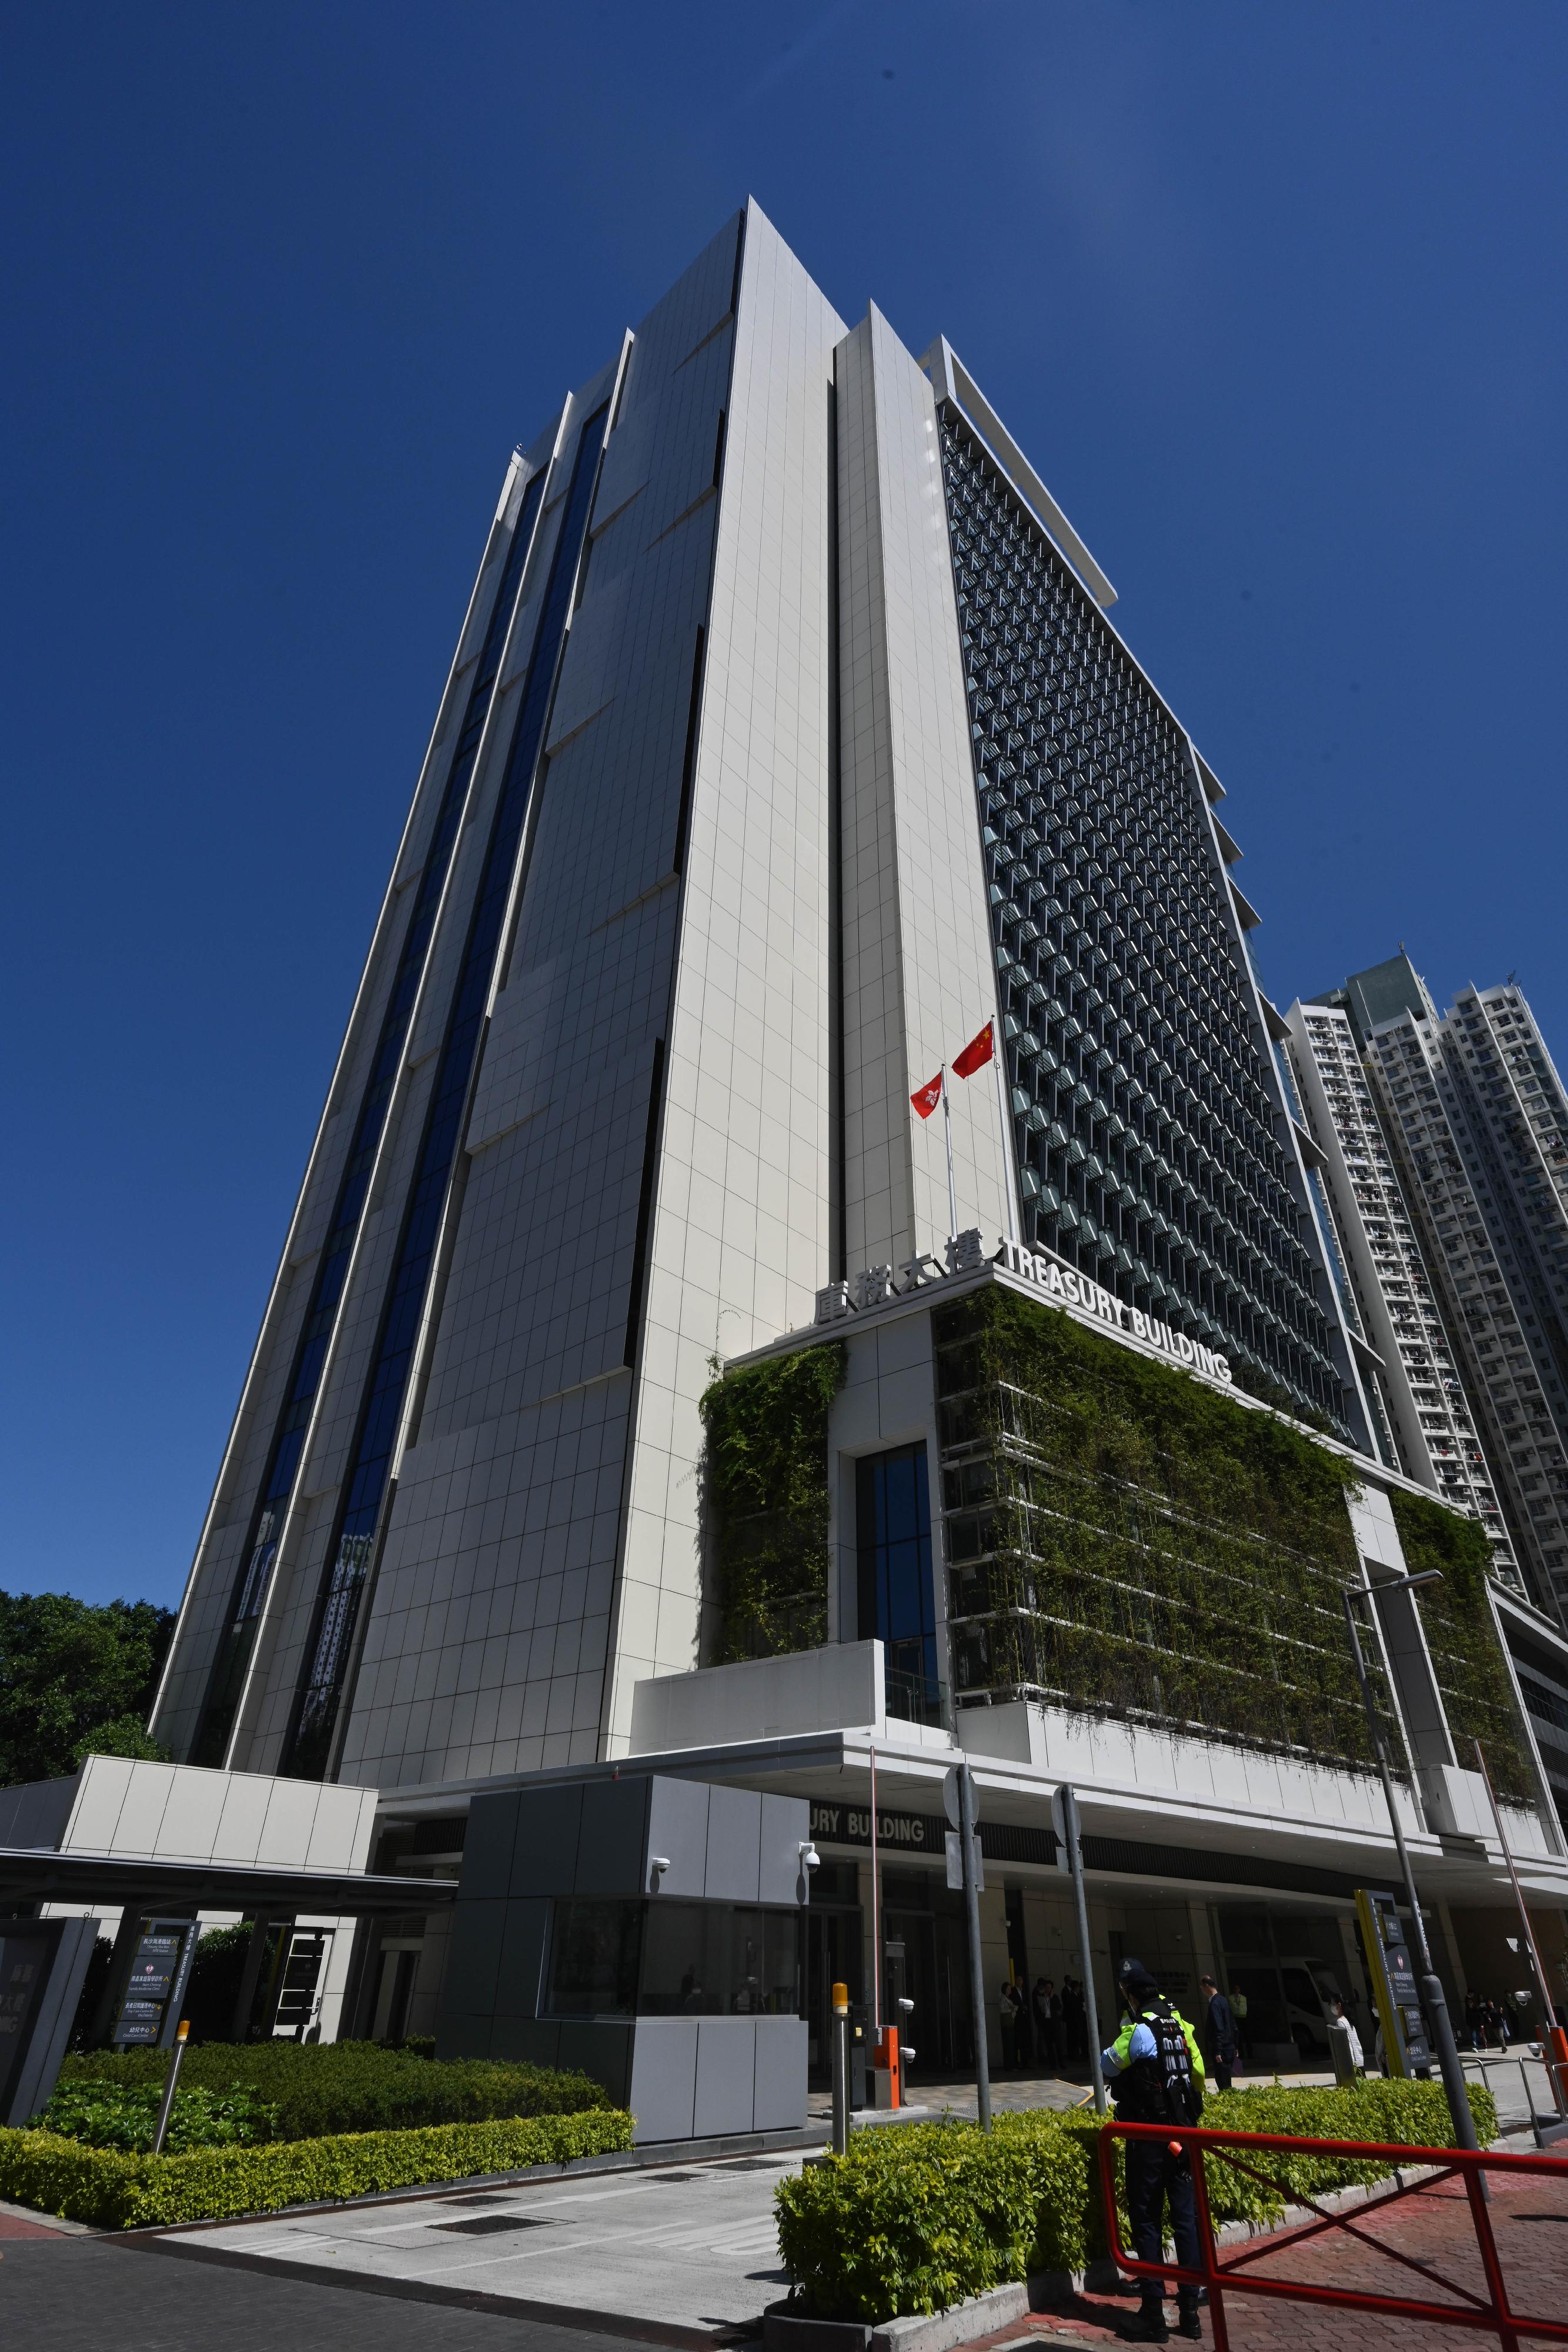 庫務大樓位於長沙灣東京街西三號。大樓內除設立庫務署和超過10個部門的辦事處，亦設有不同社區設施。